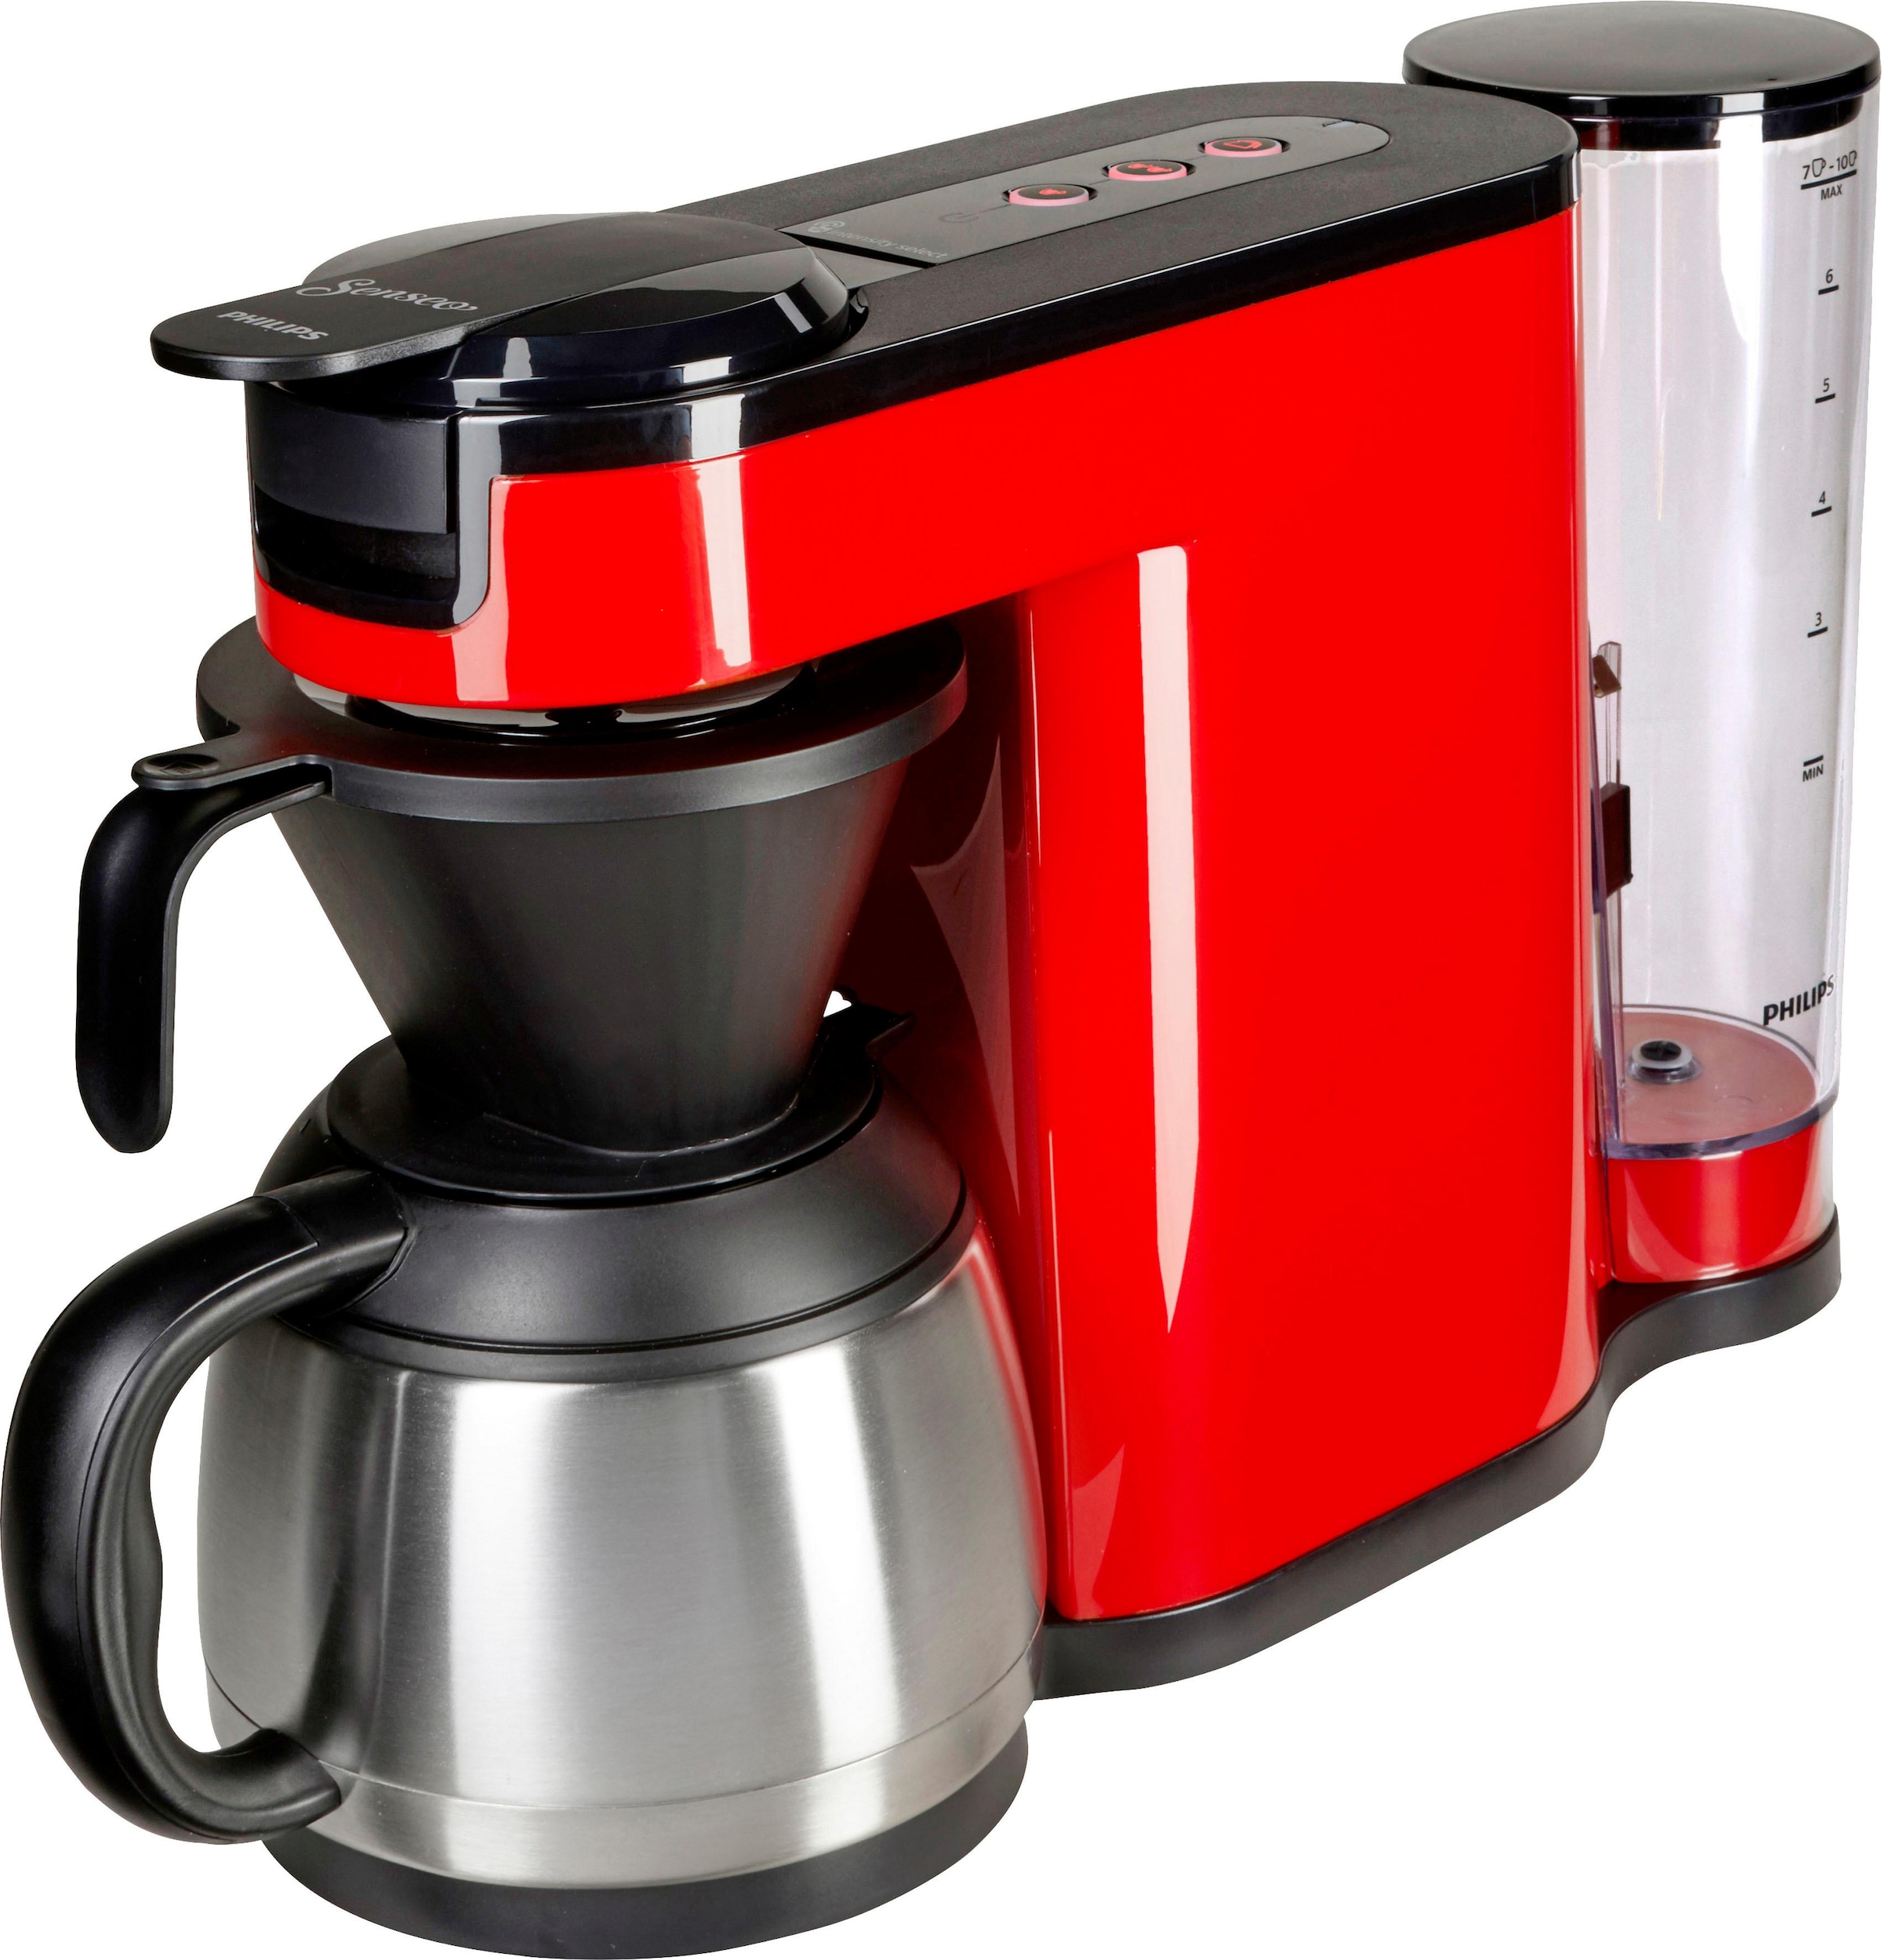 jetzt 1 € Wert OTTO von bestellen »SENSEO® Kaffeepadmaschine im Philips 9,90 Senseo Kaffeepaddose HD6592/80«, Papierfilter, Kaffeekanne, UVP bei l Switch